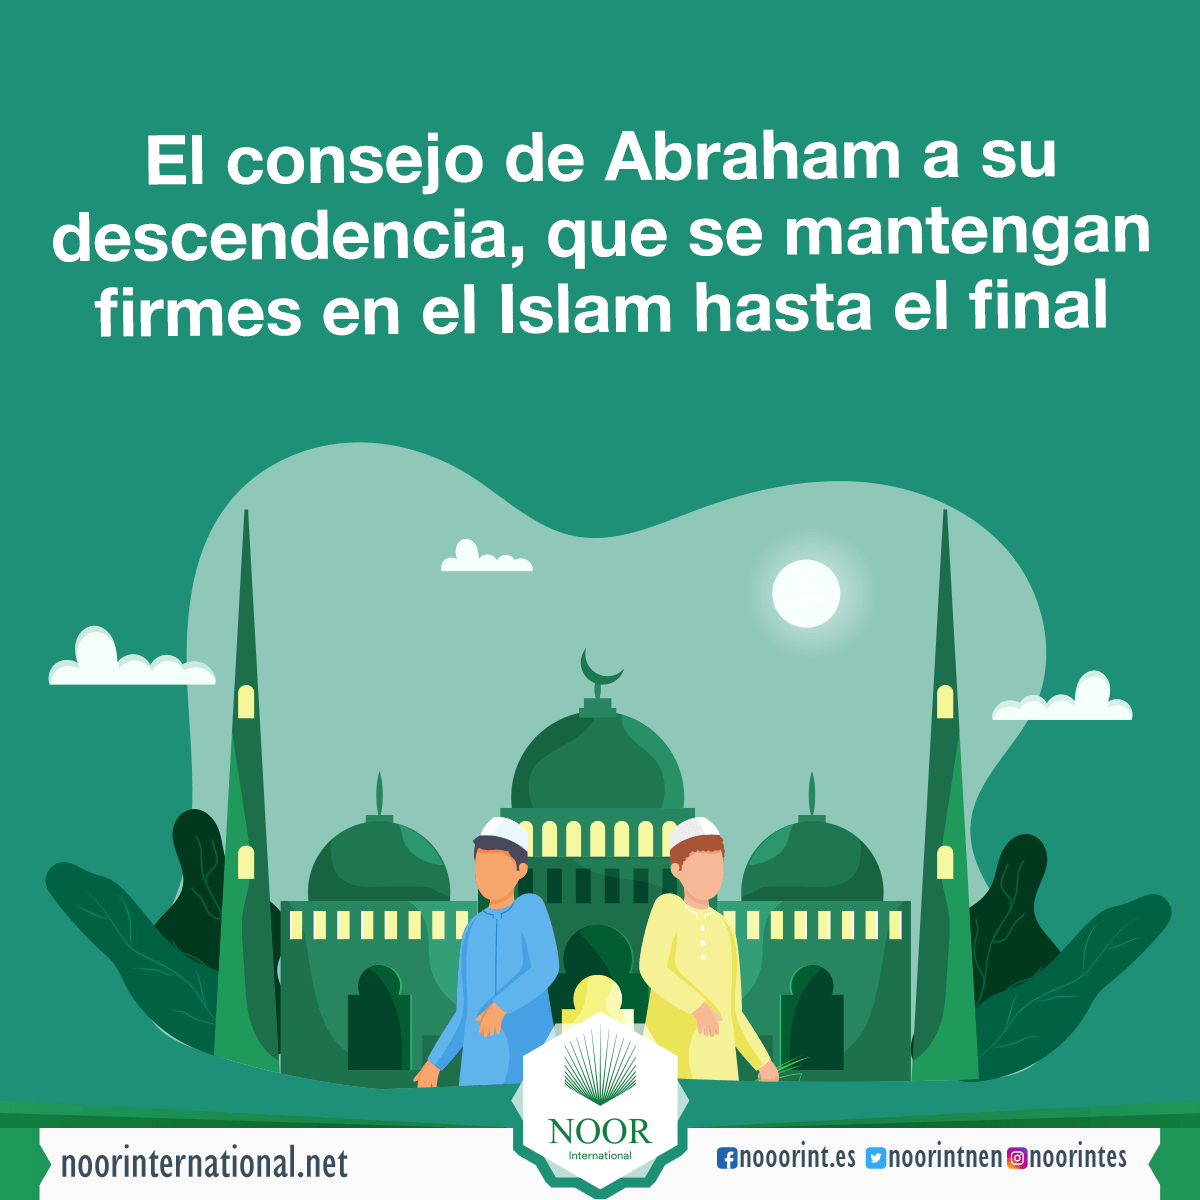 El consejo de Abraham a su descendencia, que se mantengan firmes en el Islam hasta el final